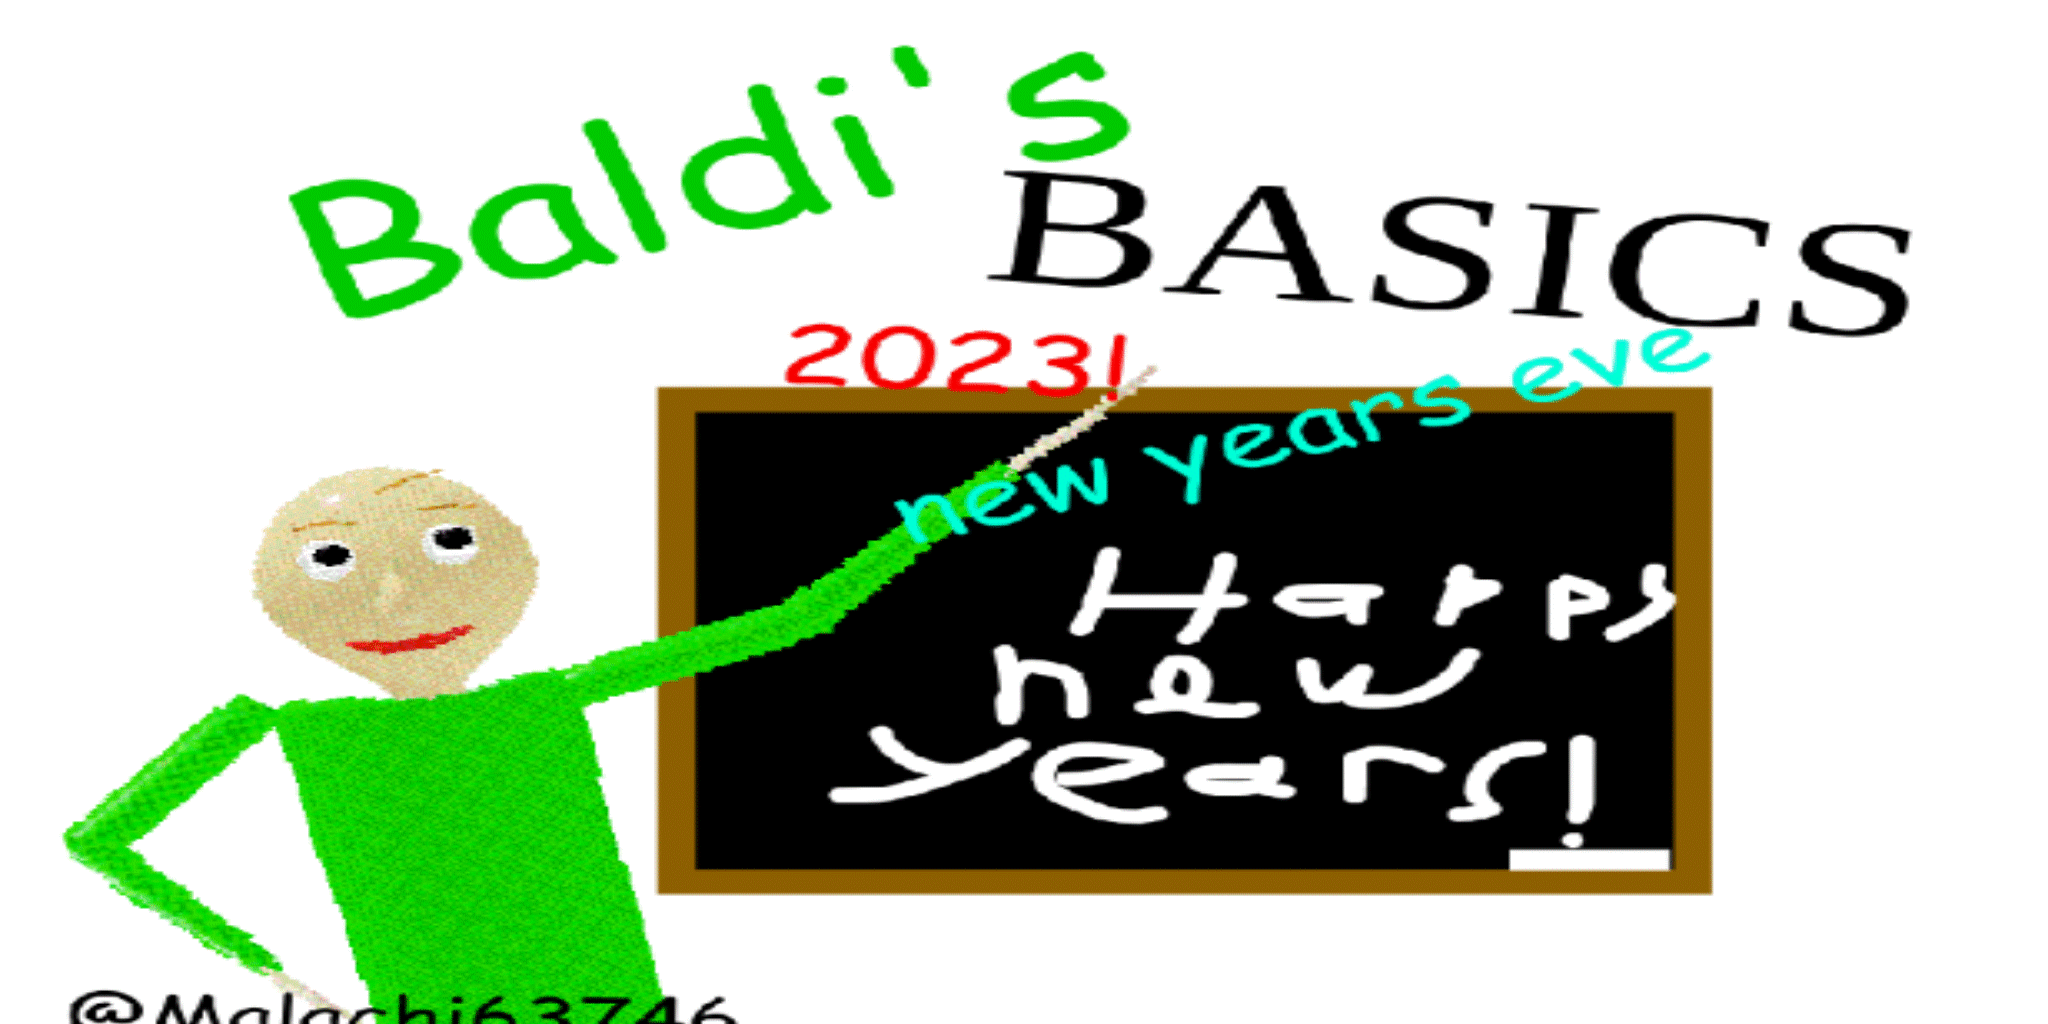 Baldi's Basics Squid Game Mod App Trends 2023 Baldi's Basics Squid